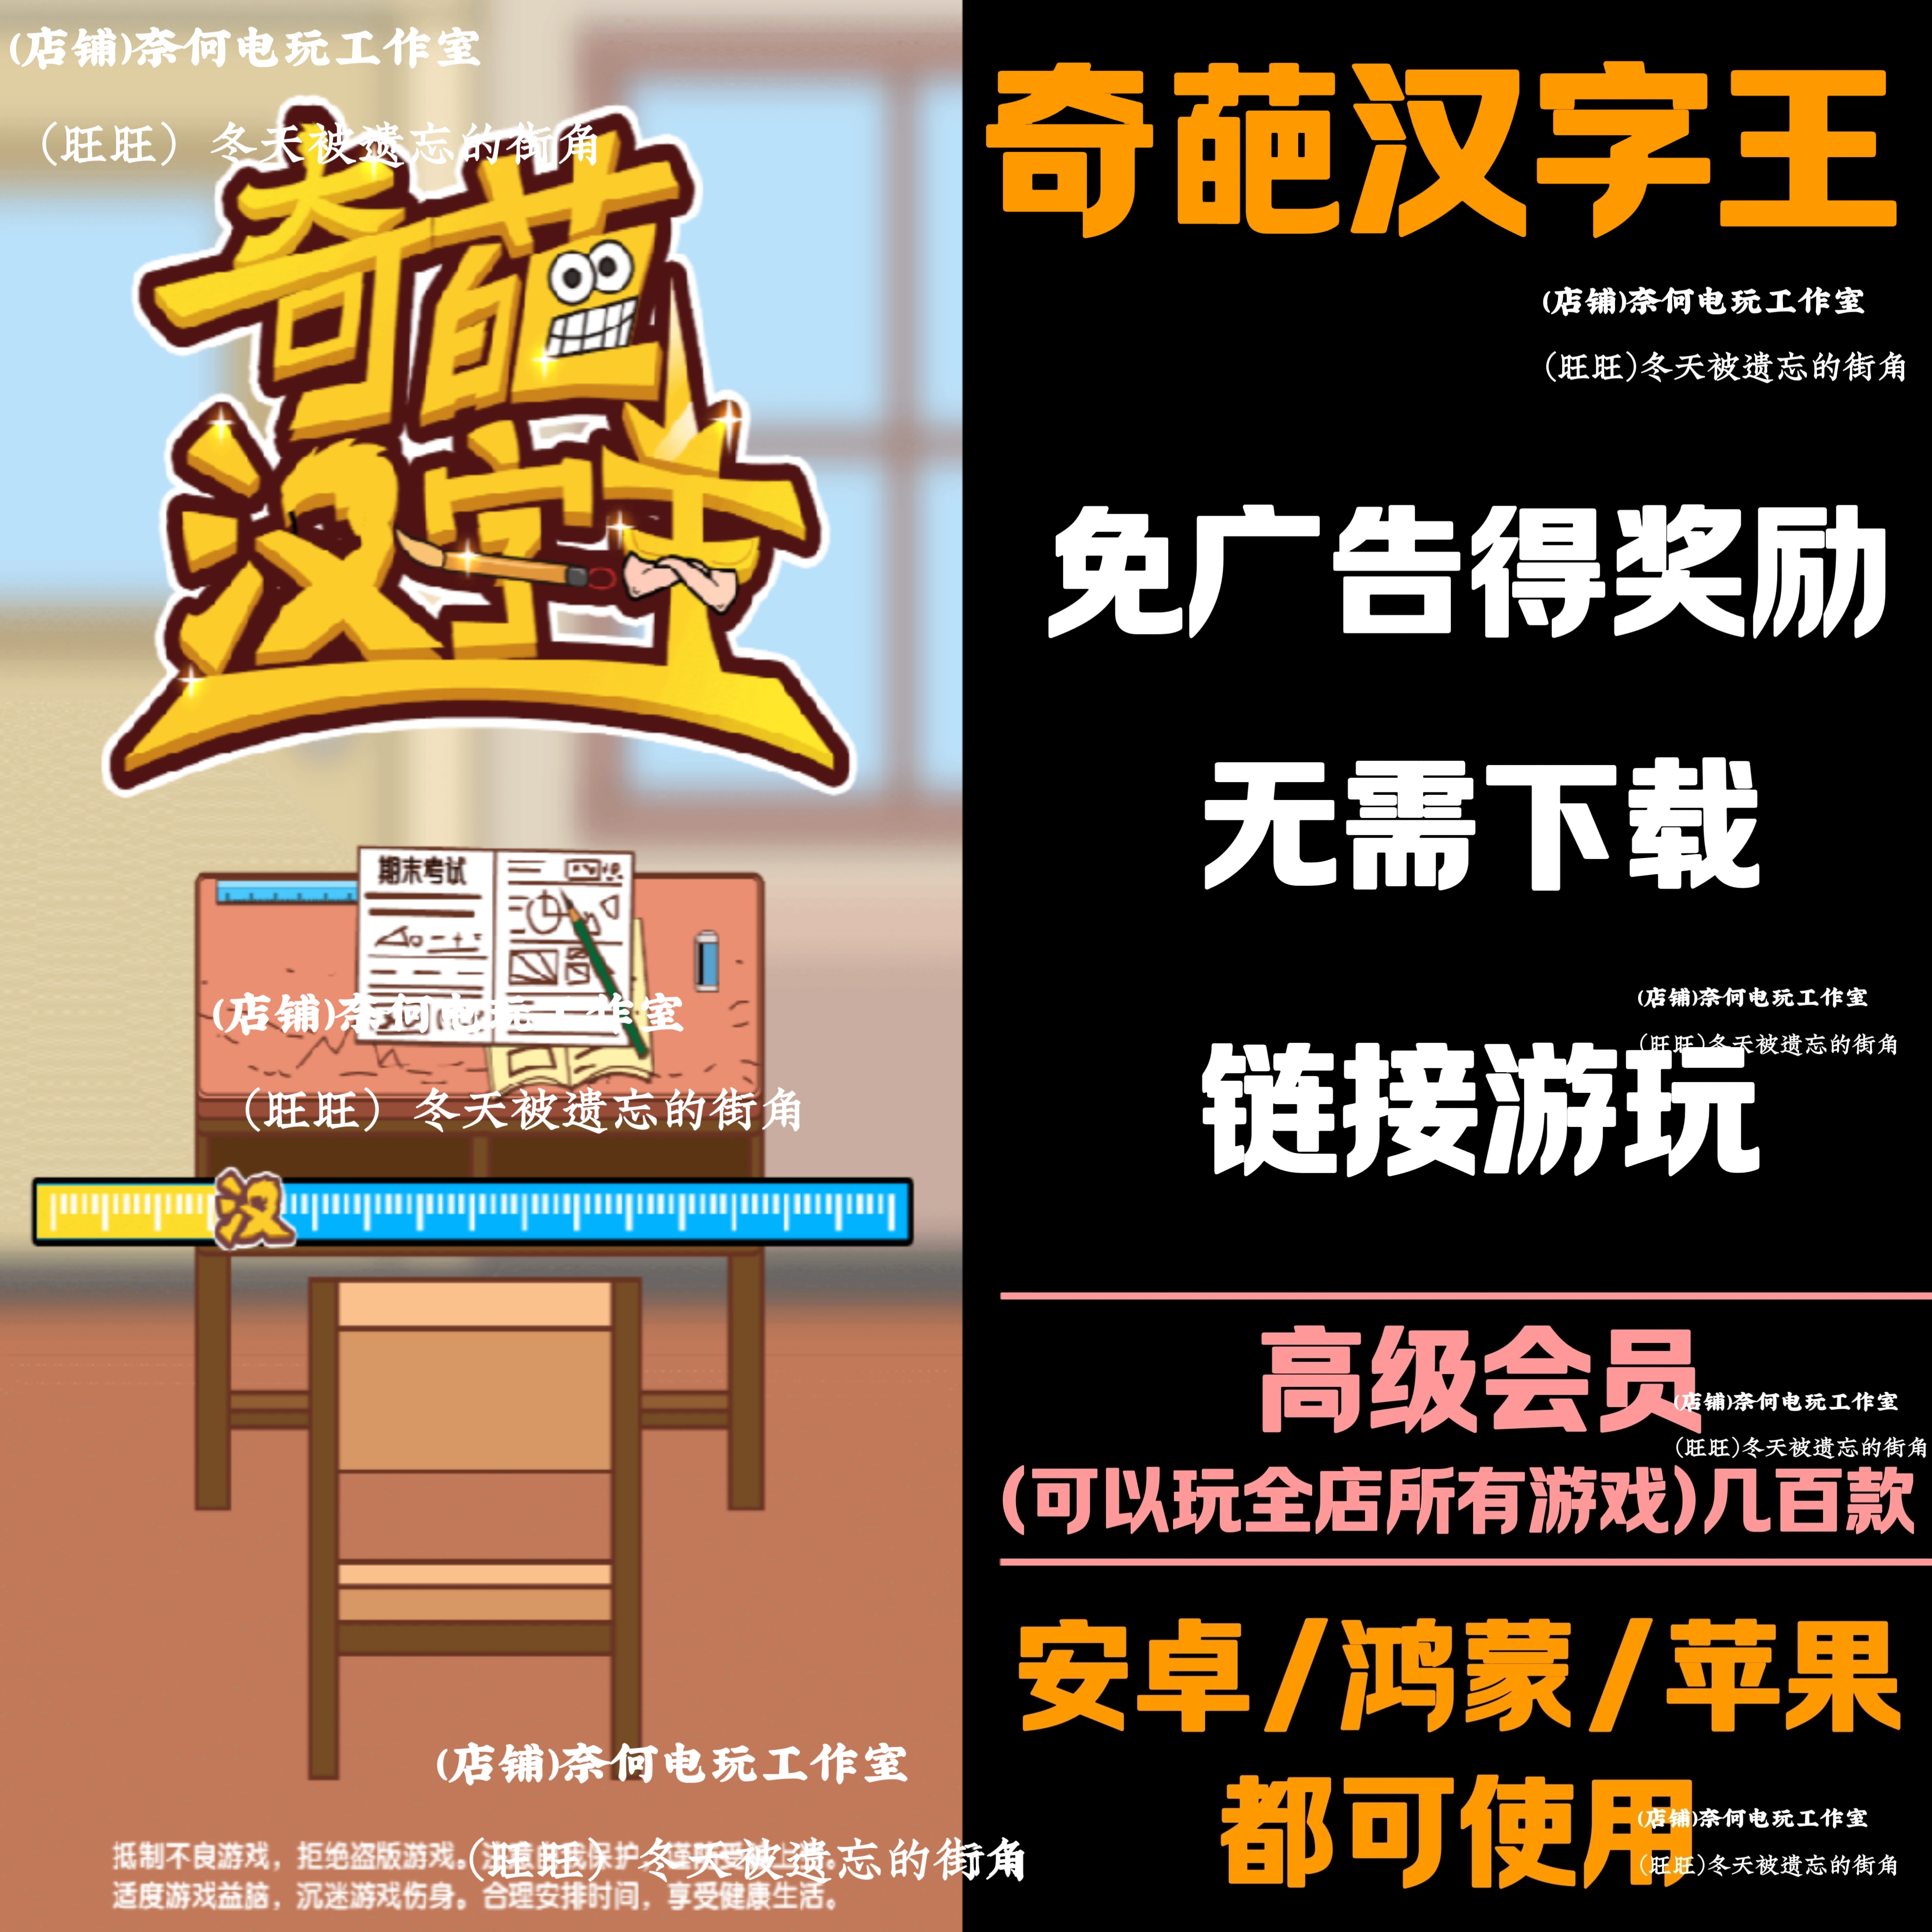 奇葩汉字王  免广告 安卓苹果ios 链接游玩  抖音小游戏 自动发货